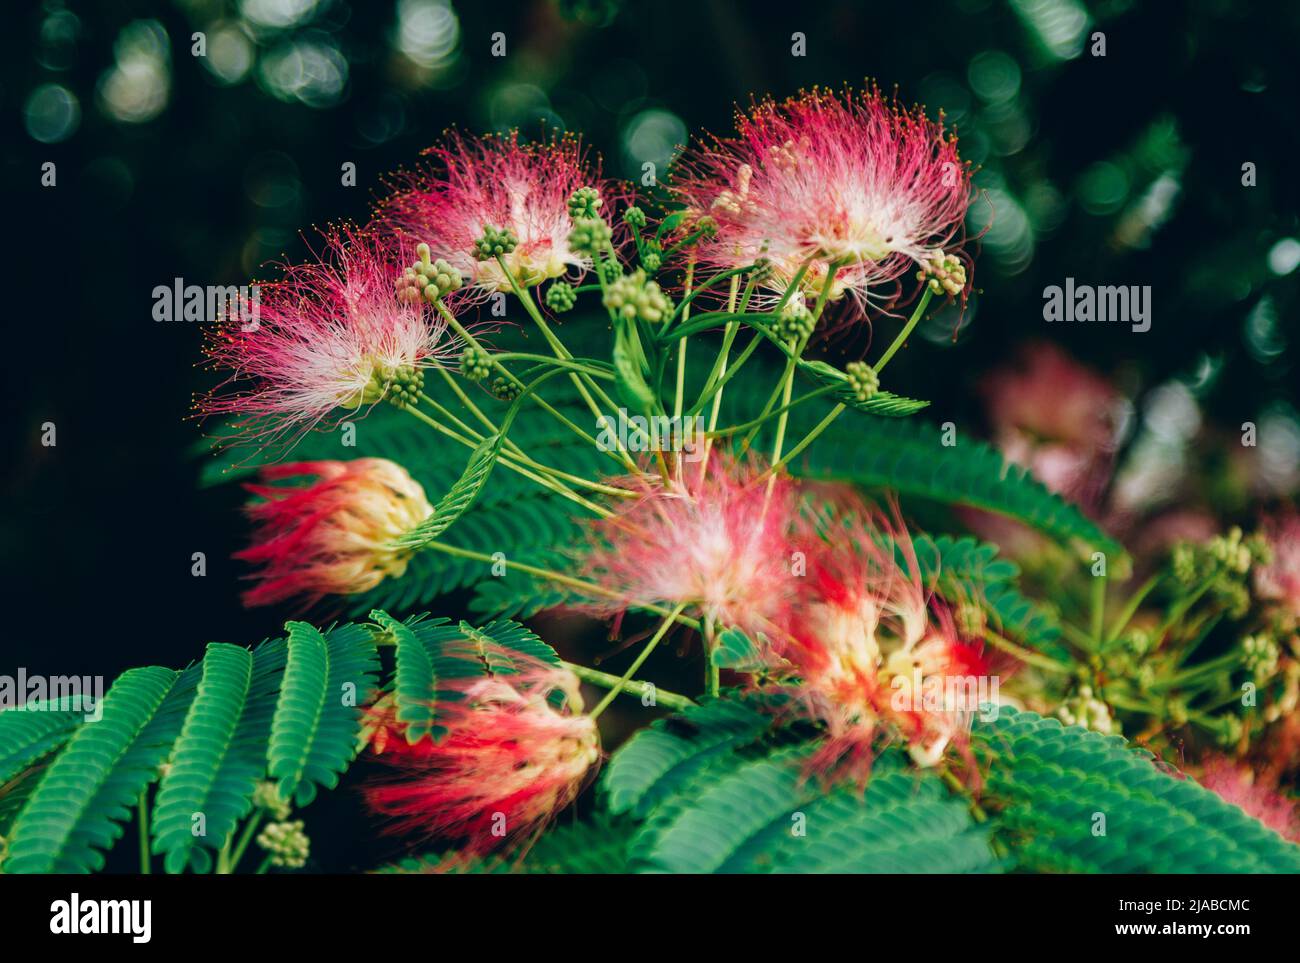 Schöne rosa Puderpuff Baumblüten, Calliandra surinamensis, mimosaide Familie. Blüht und die grünen Blätter auf dem Ast. Exotische tropische Pflanze. Summe Stockfoto